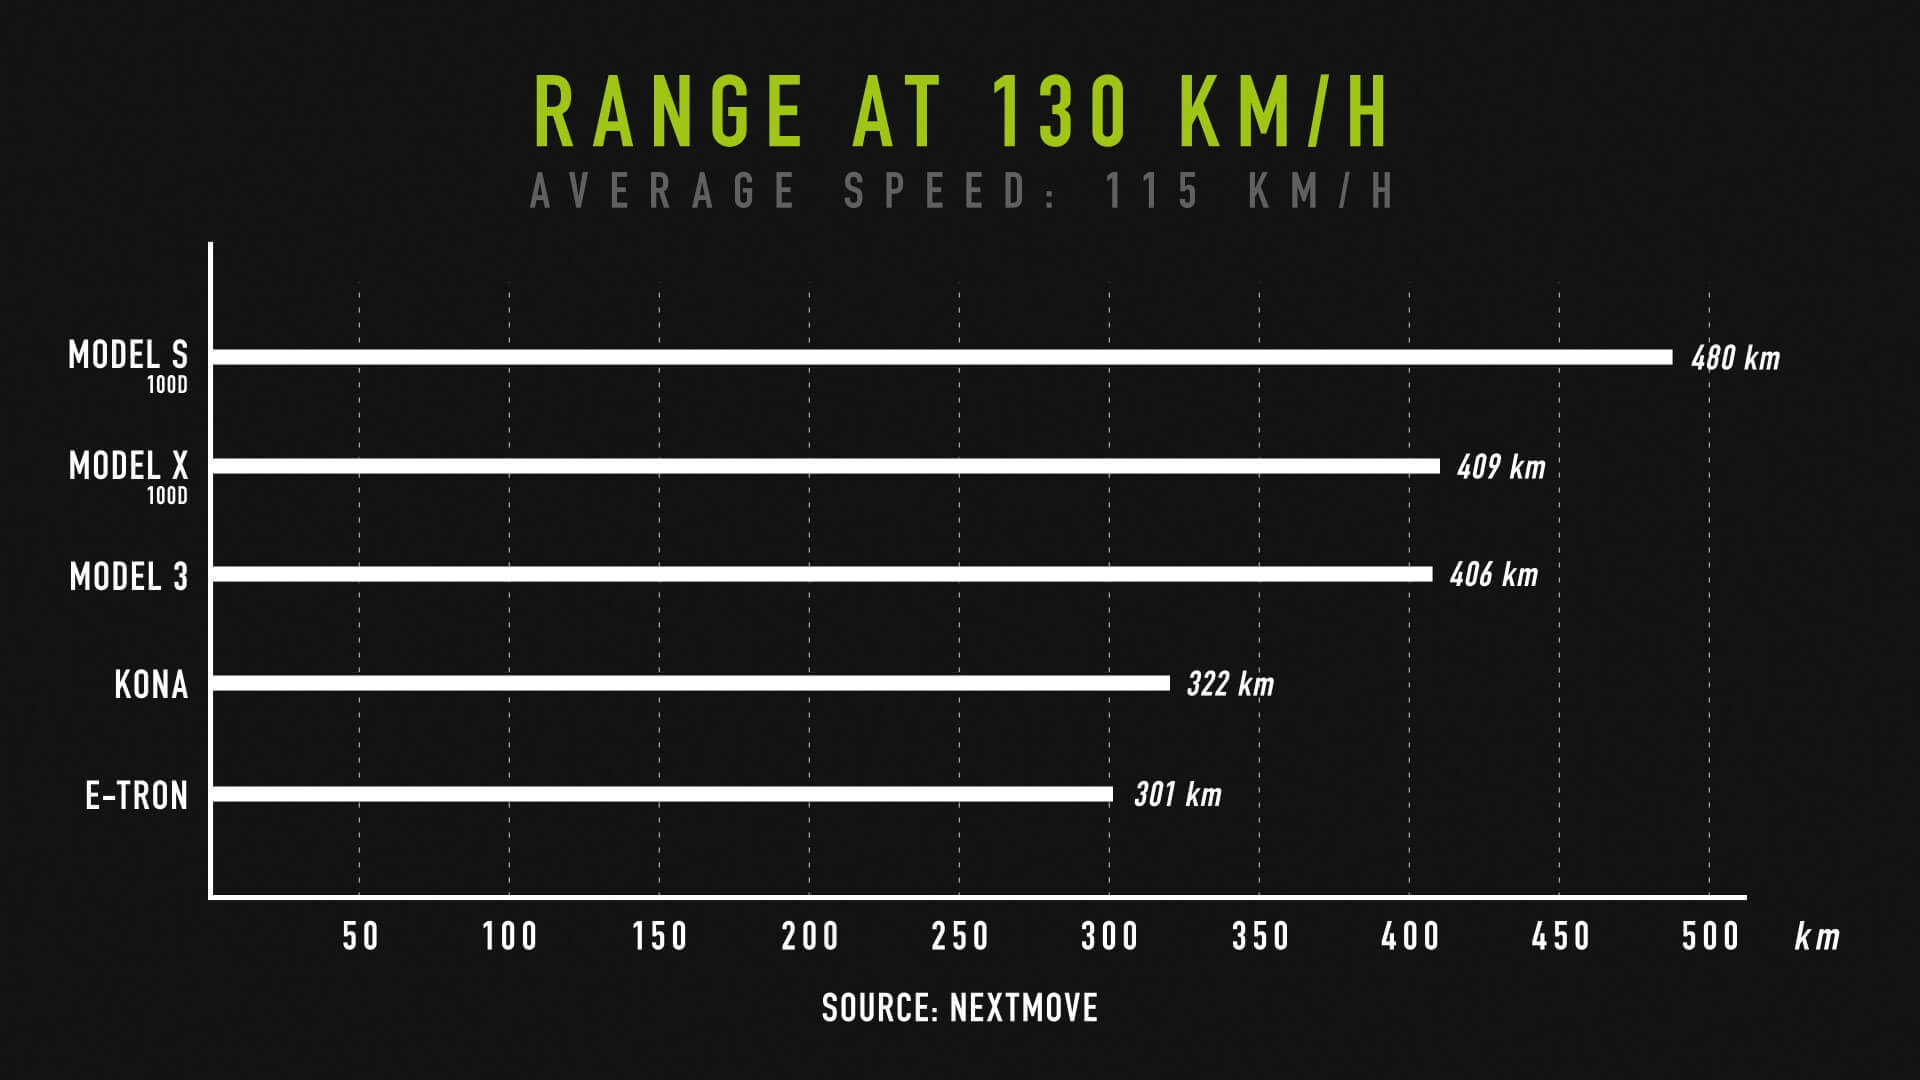 Запас хода участников при скорости 130 км/ч